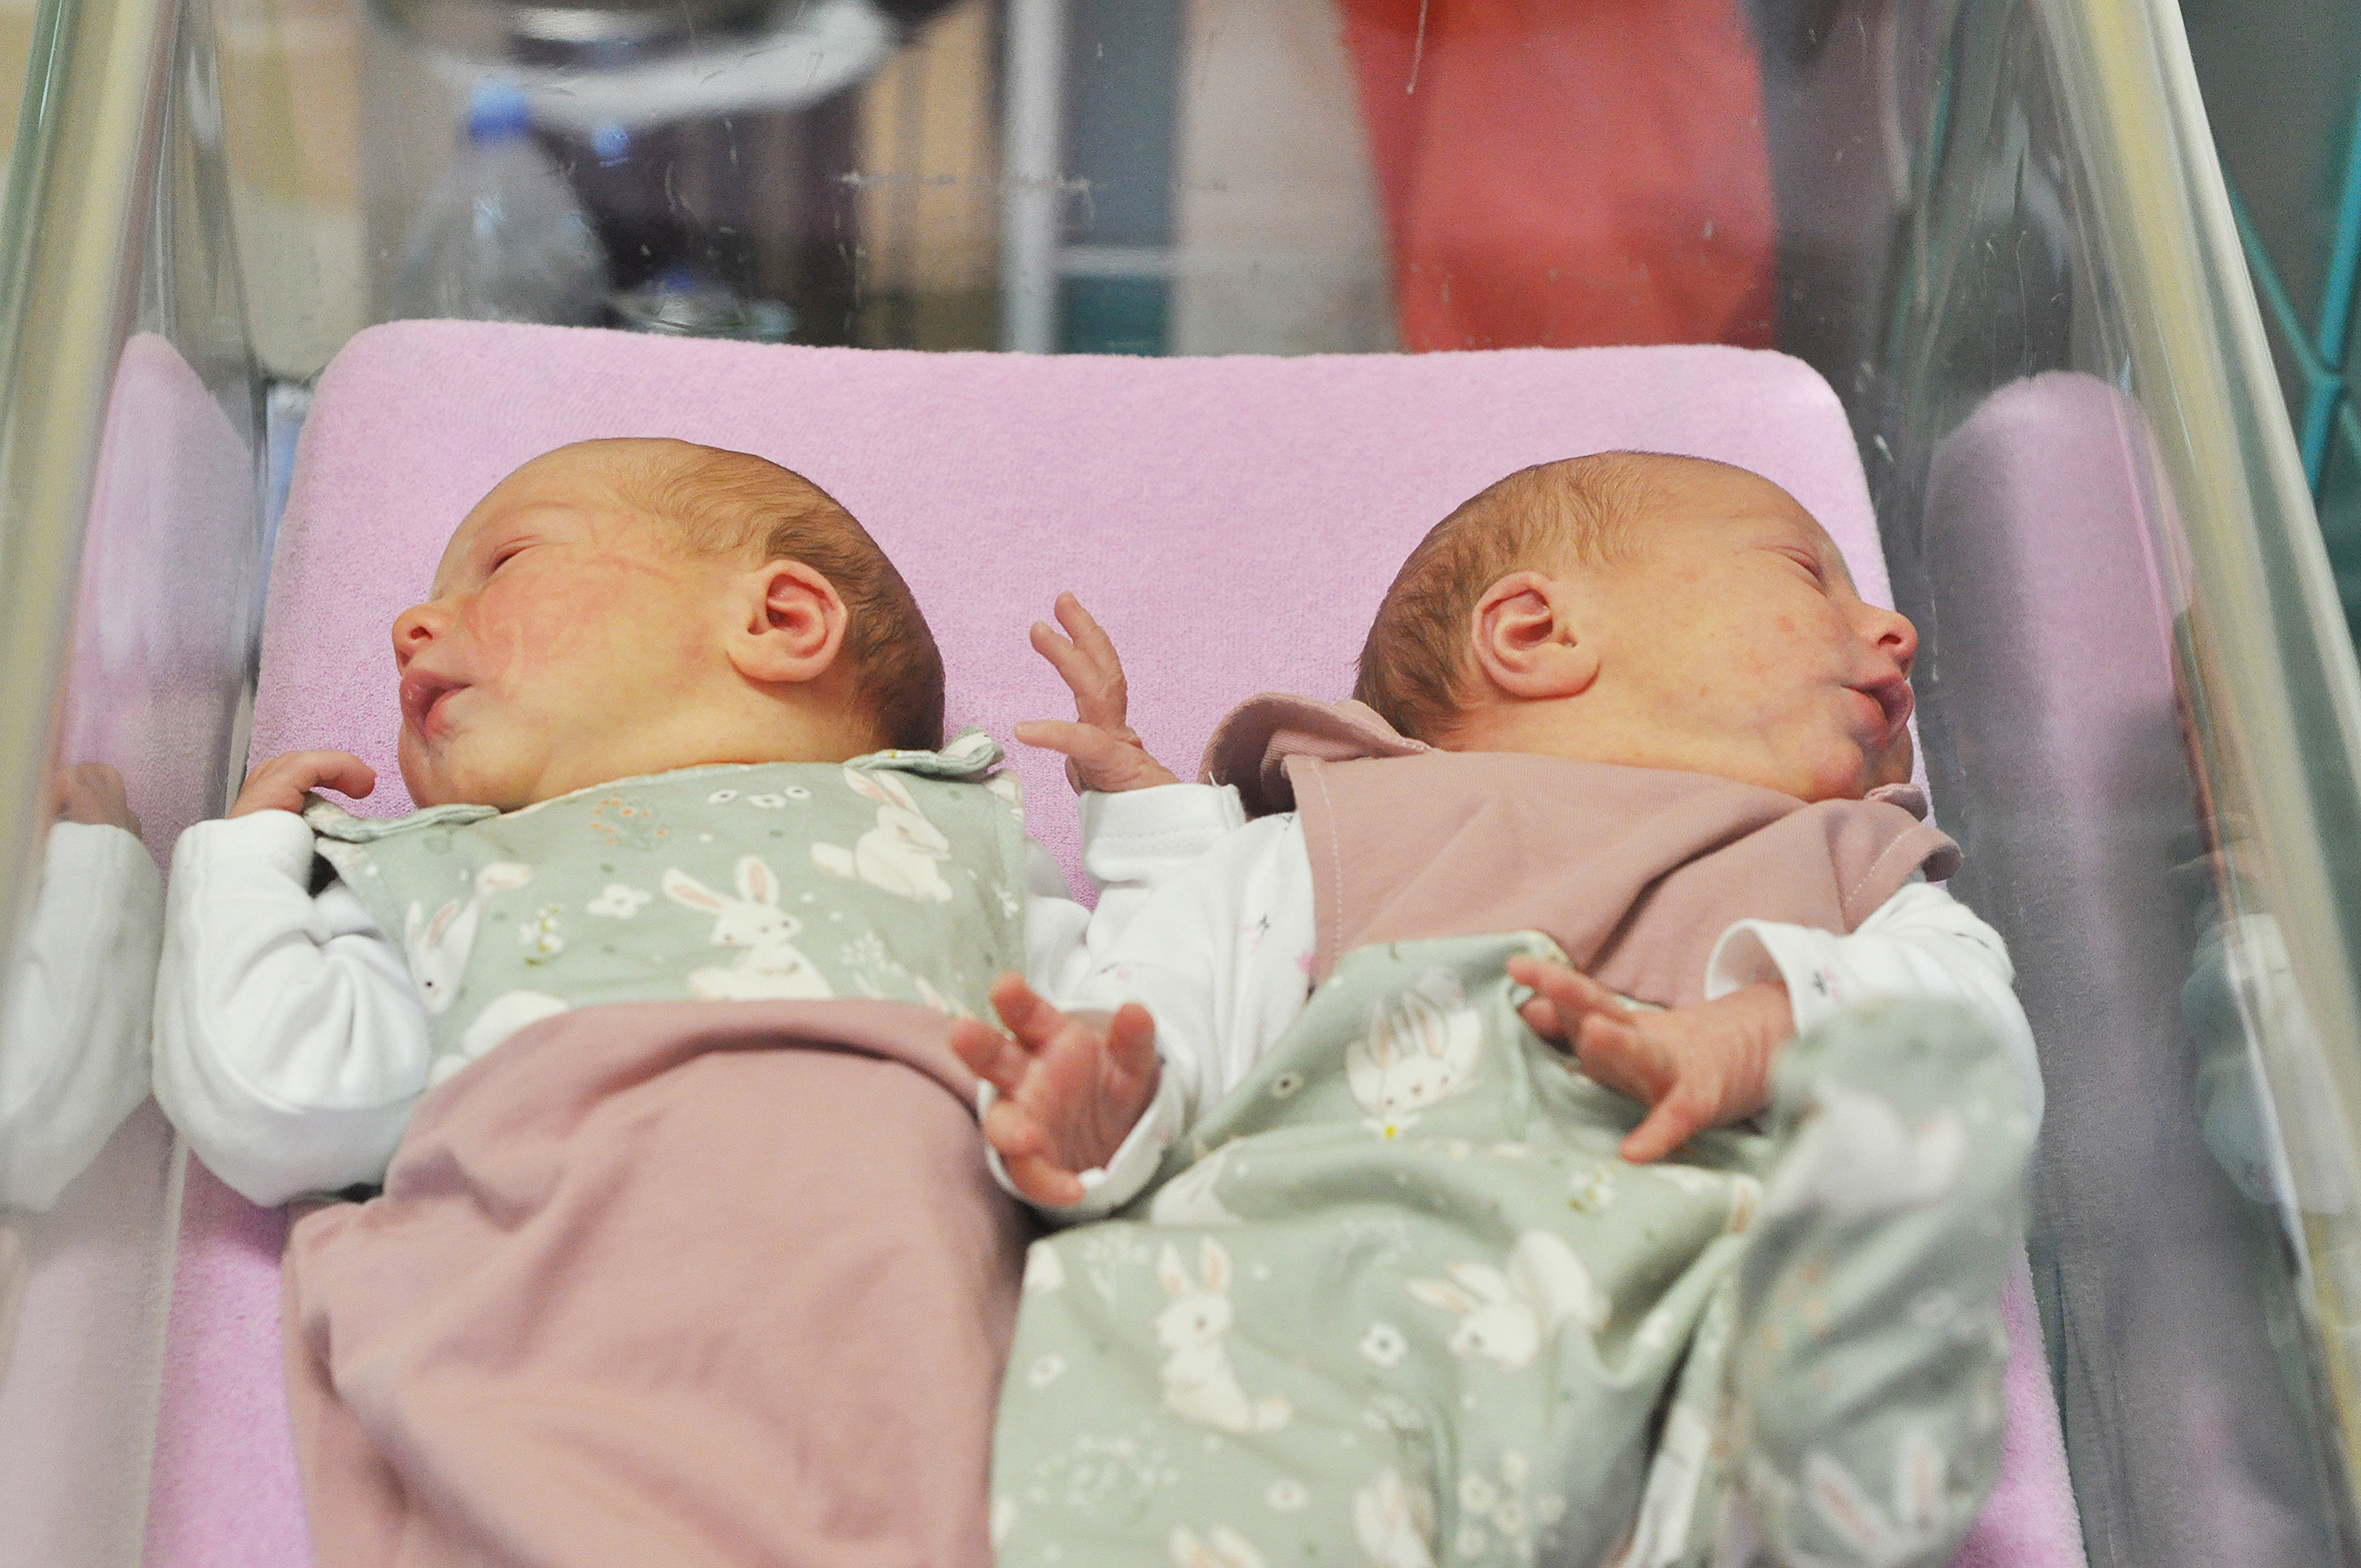 Bliźniaczki Laura i Wiktoria są córeczkami Doroty i Marcina z Czernicy. Przyszły na świat 12 lutego o 4.25 i 4.40. W domu czekają ja siostry: Milena, Tobiasz i Eliasz.